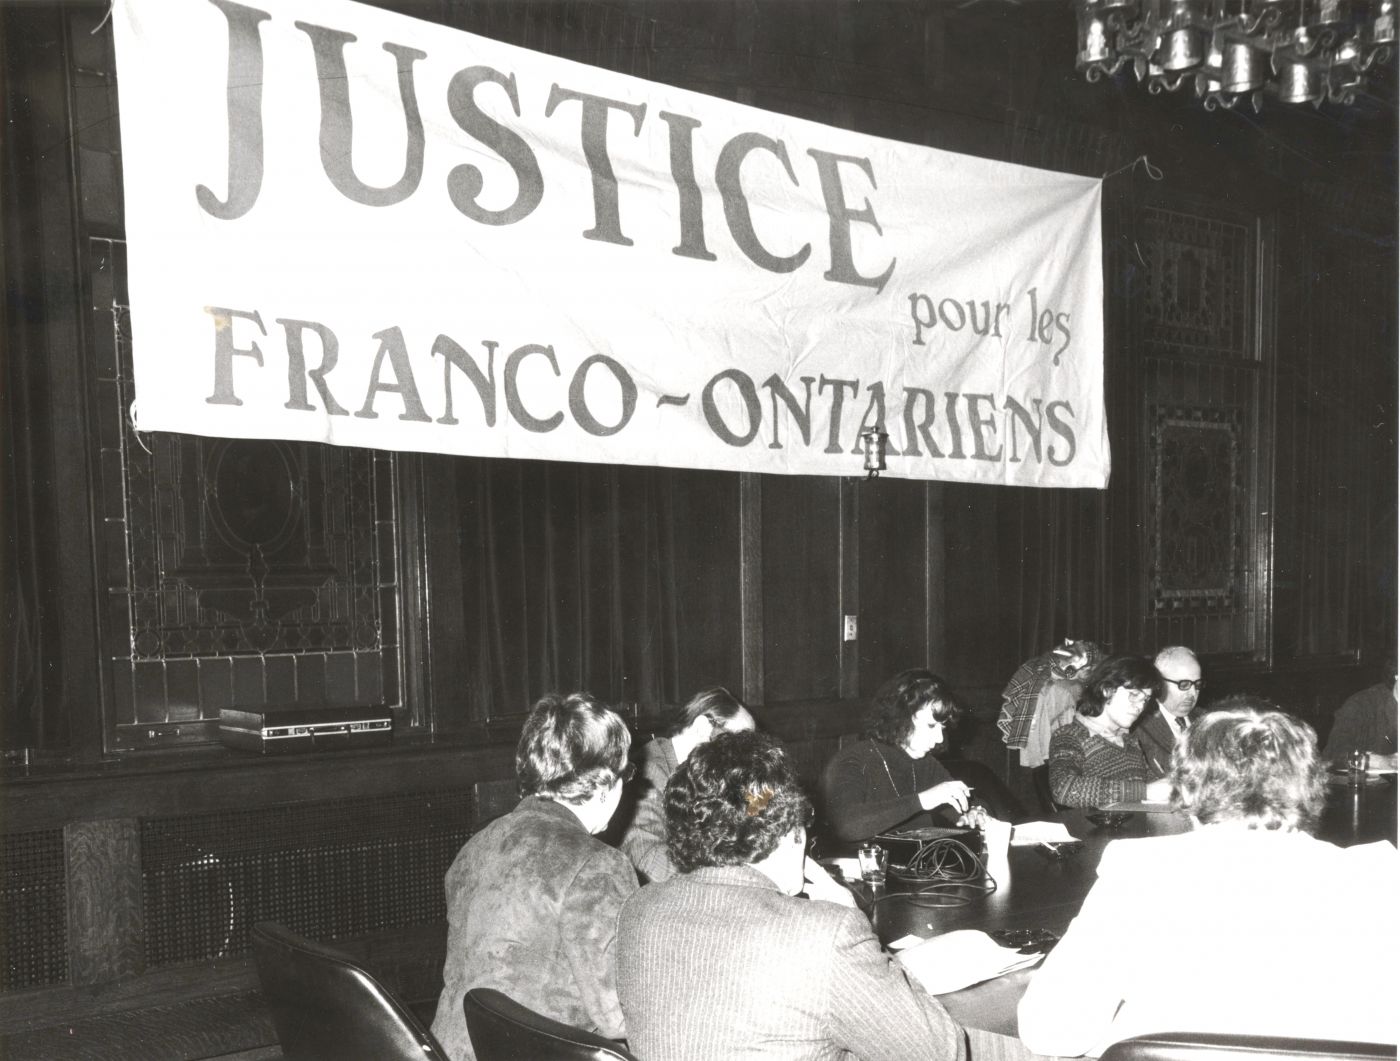 Photographie en noir et blanc d’une réunion qui se tient dans une salle aux murs sombres, masqués par une bannière où est inscrit : « JUSTICE pour les FRANCO-ONTARIENS ». Apparaissent, de dos, une dizaine d’hommes et des femmes, assis à une table de conférence.